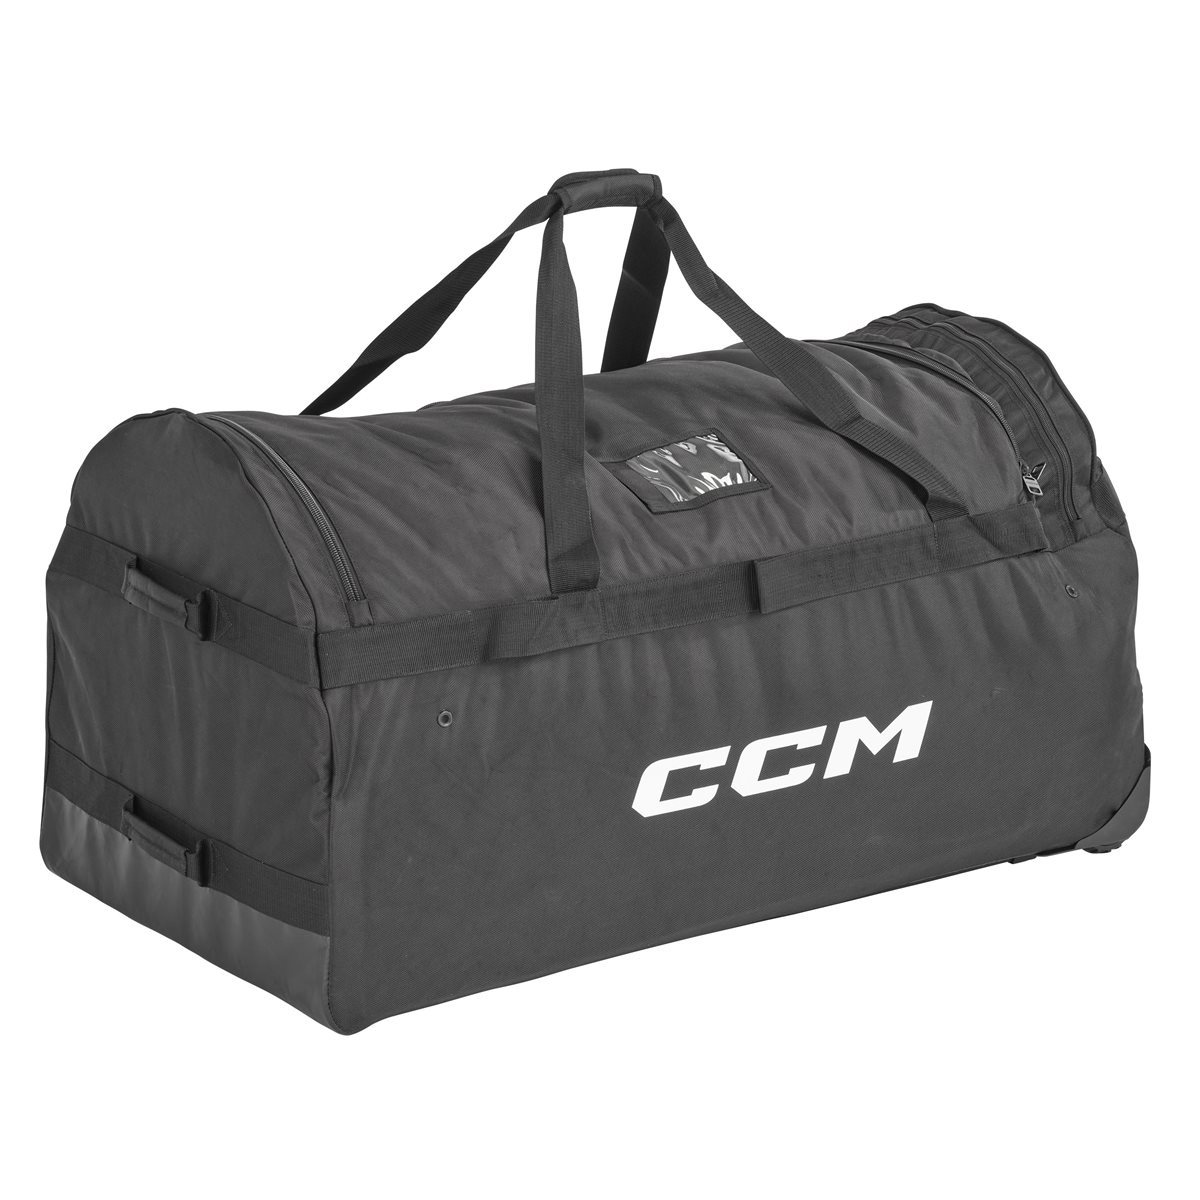 CCM Brankářská taška CCM Pro Wheeled Bag